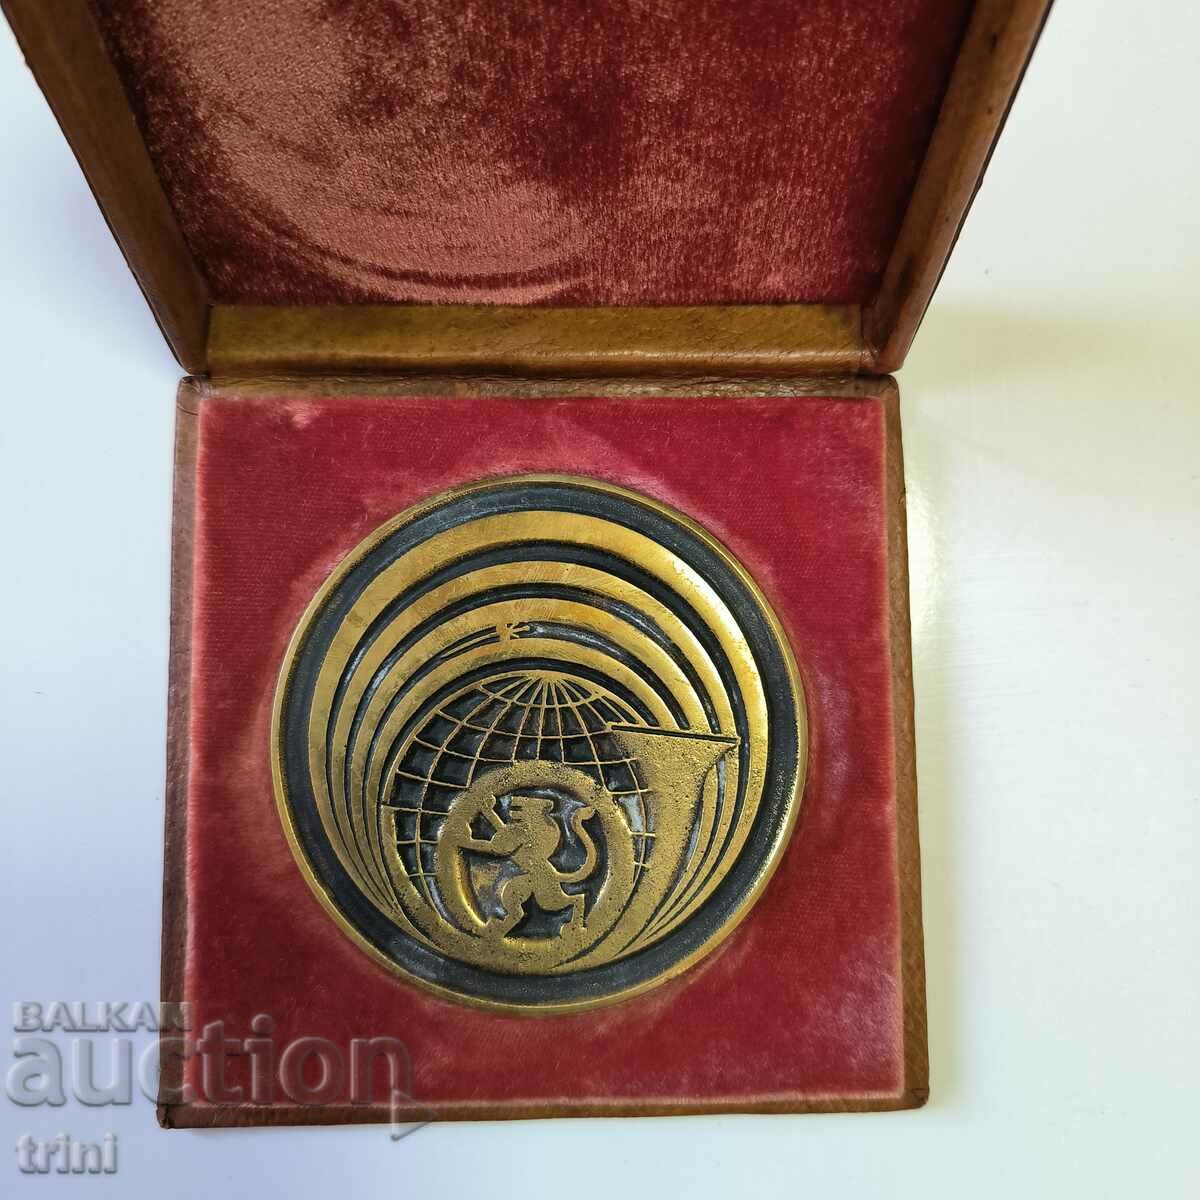 Επιτραπέζιο μετάλλιο 110 χρόνια βουλγαρικών επικοινωνιών 1989. Σπάνιο